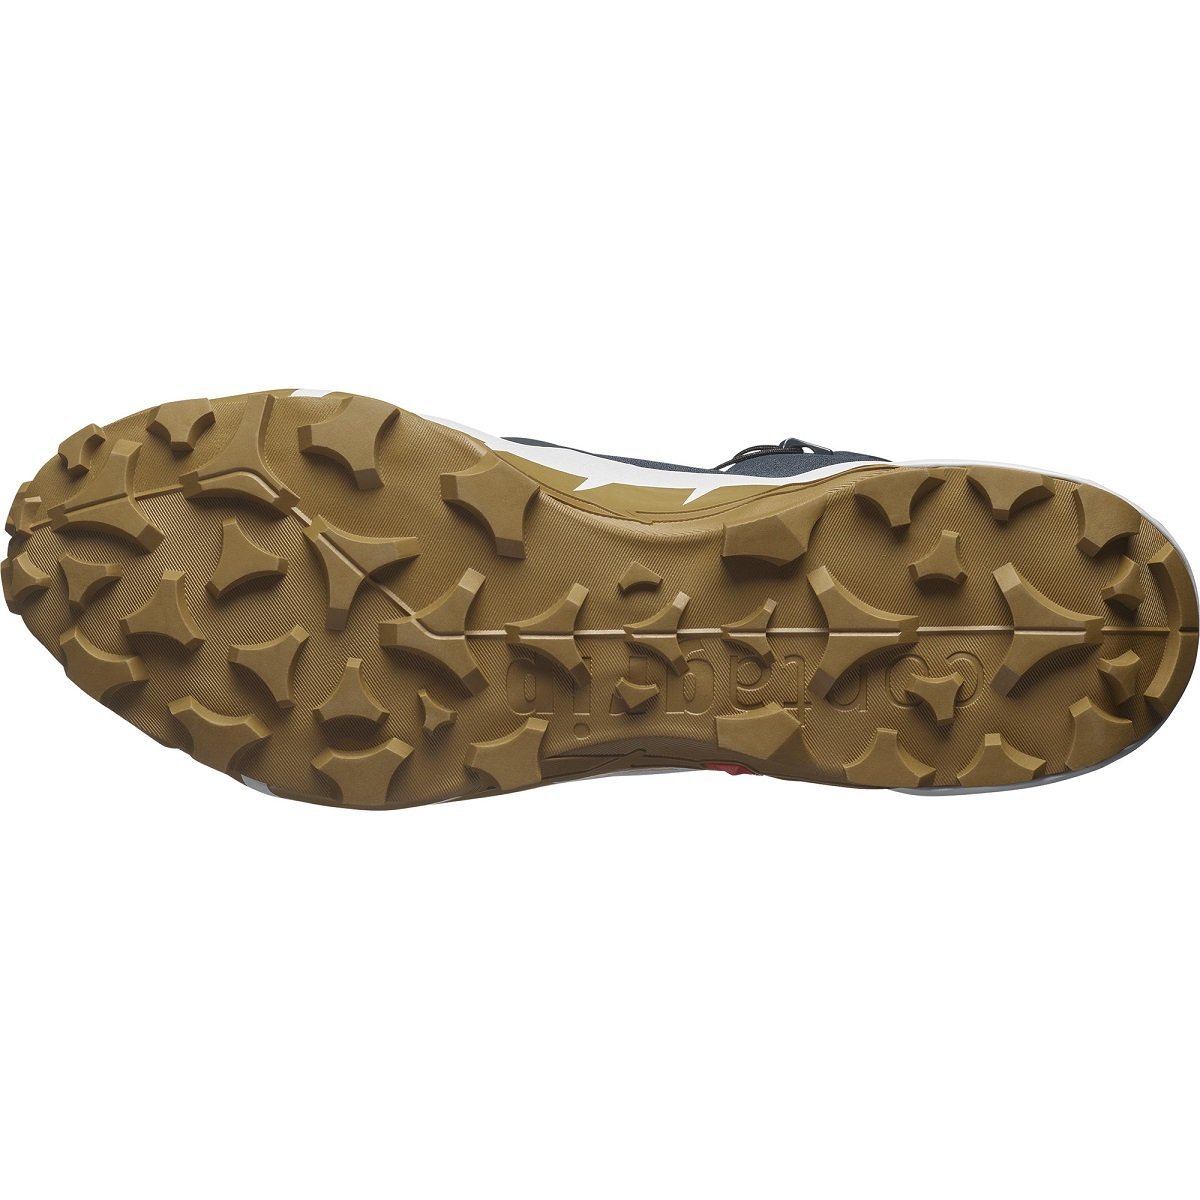 Взуття Salomon Cross Hike Mid GTX 2 M - сірий/коричневий